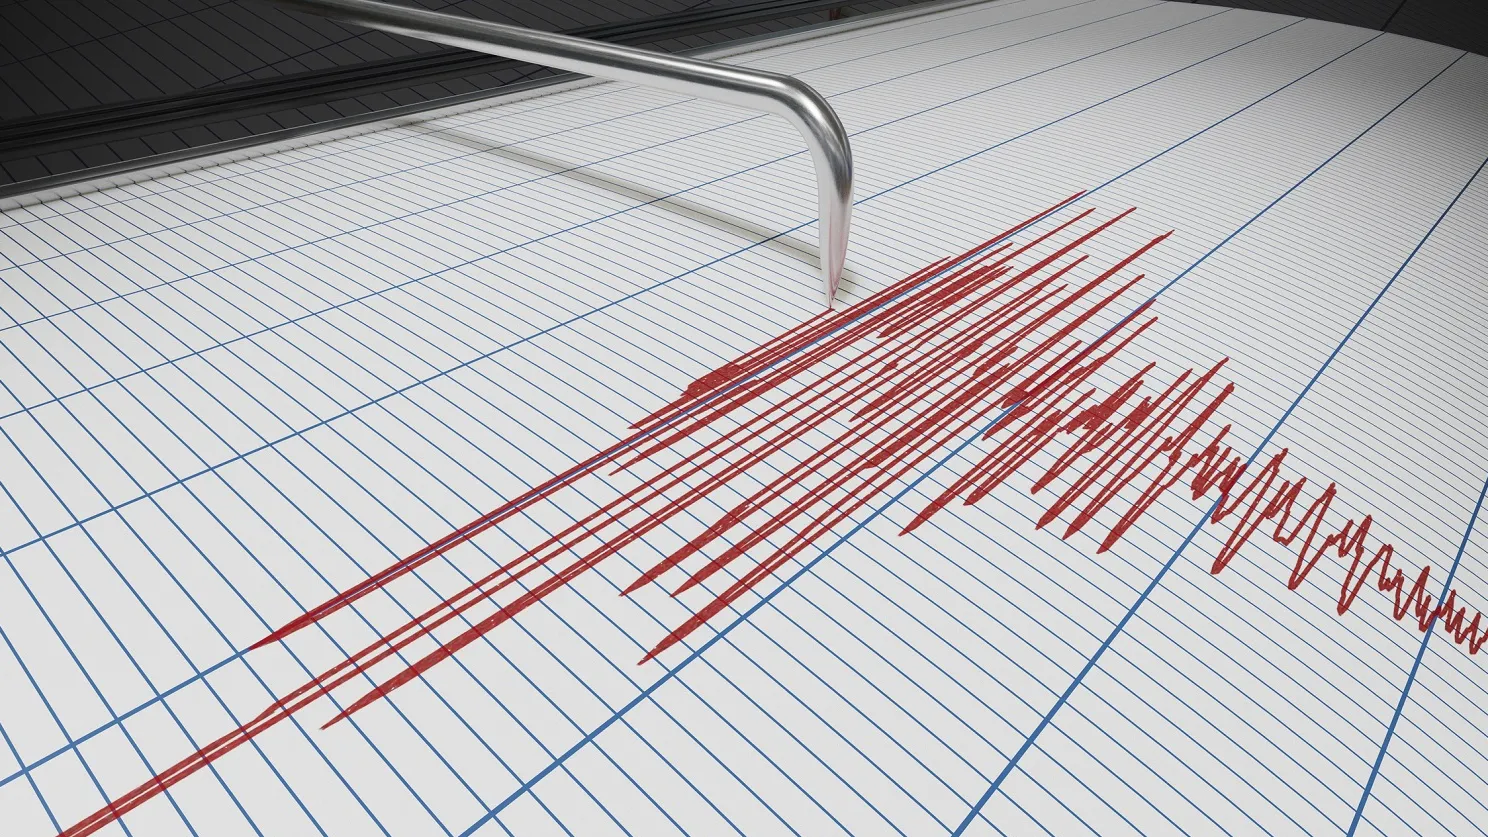 Terremoto di magnitudo 3.0 avvertito dalla popolazione